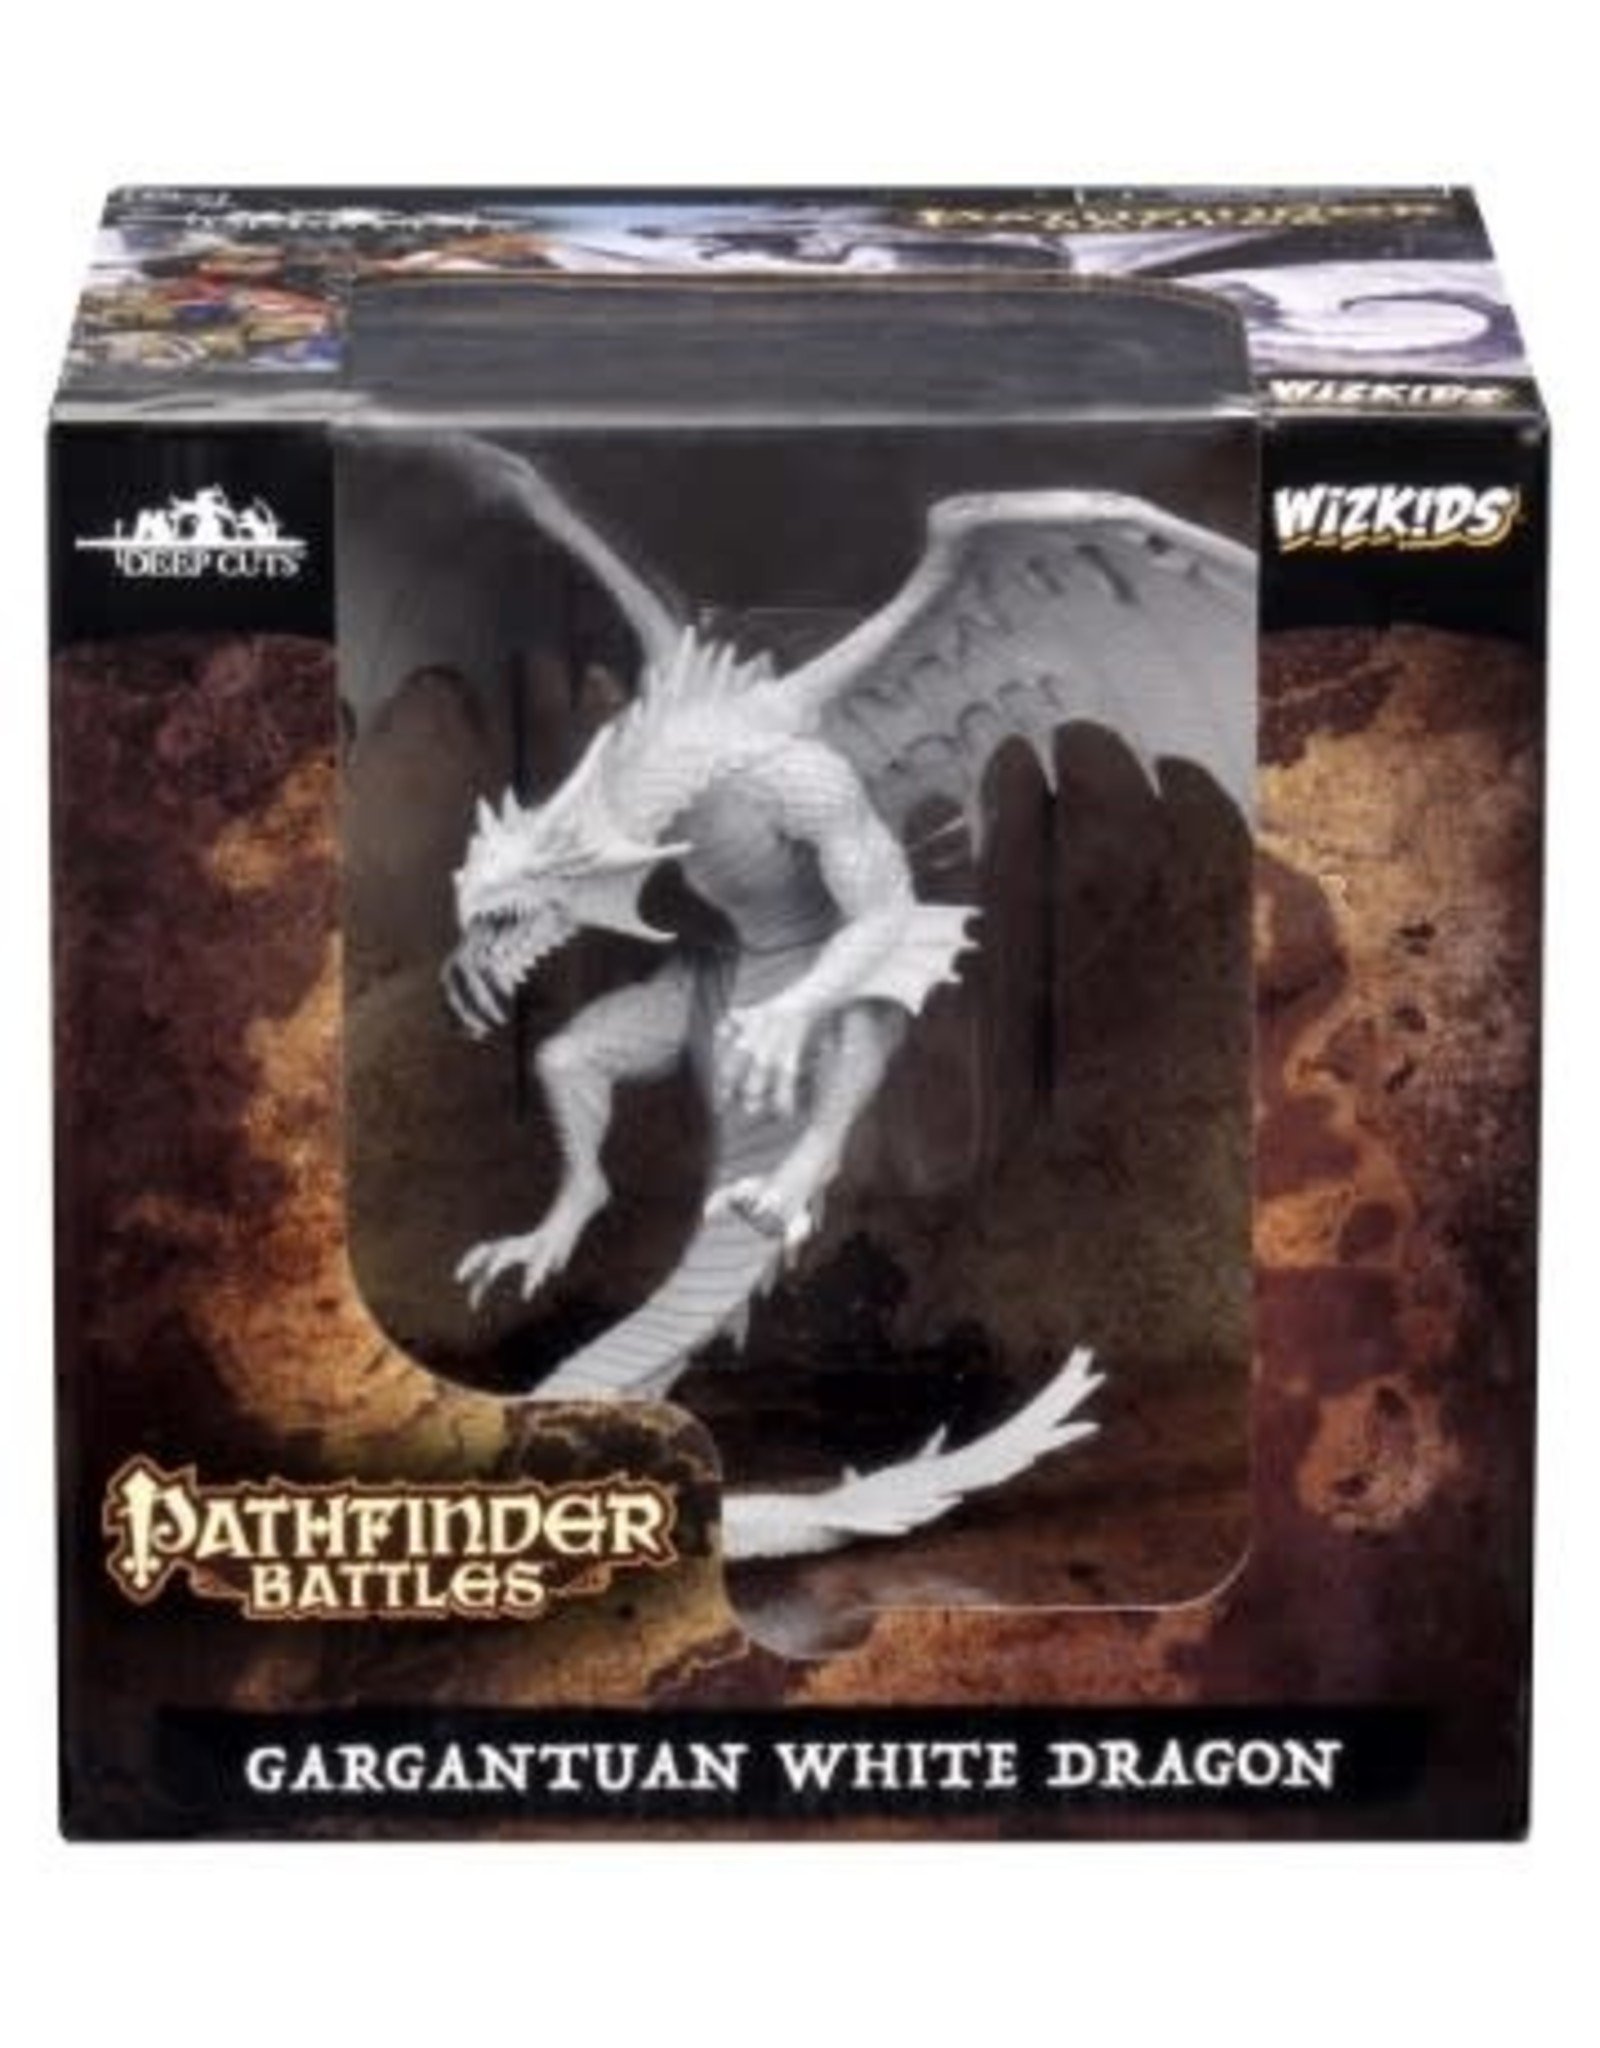 WizKids Pathfinder Gargantuan White Dragon